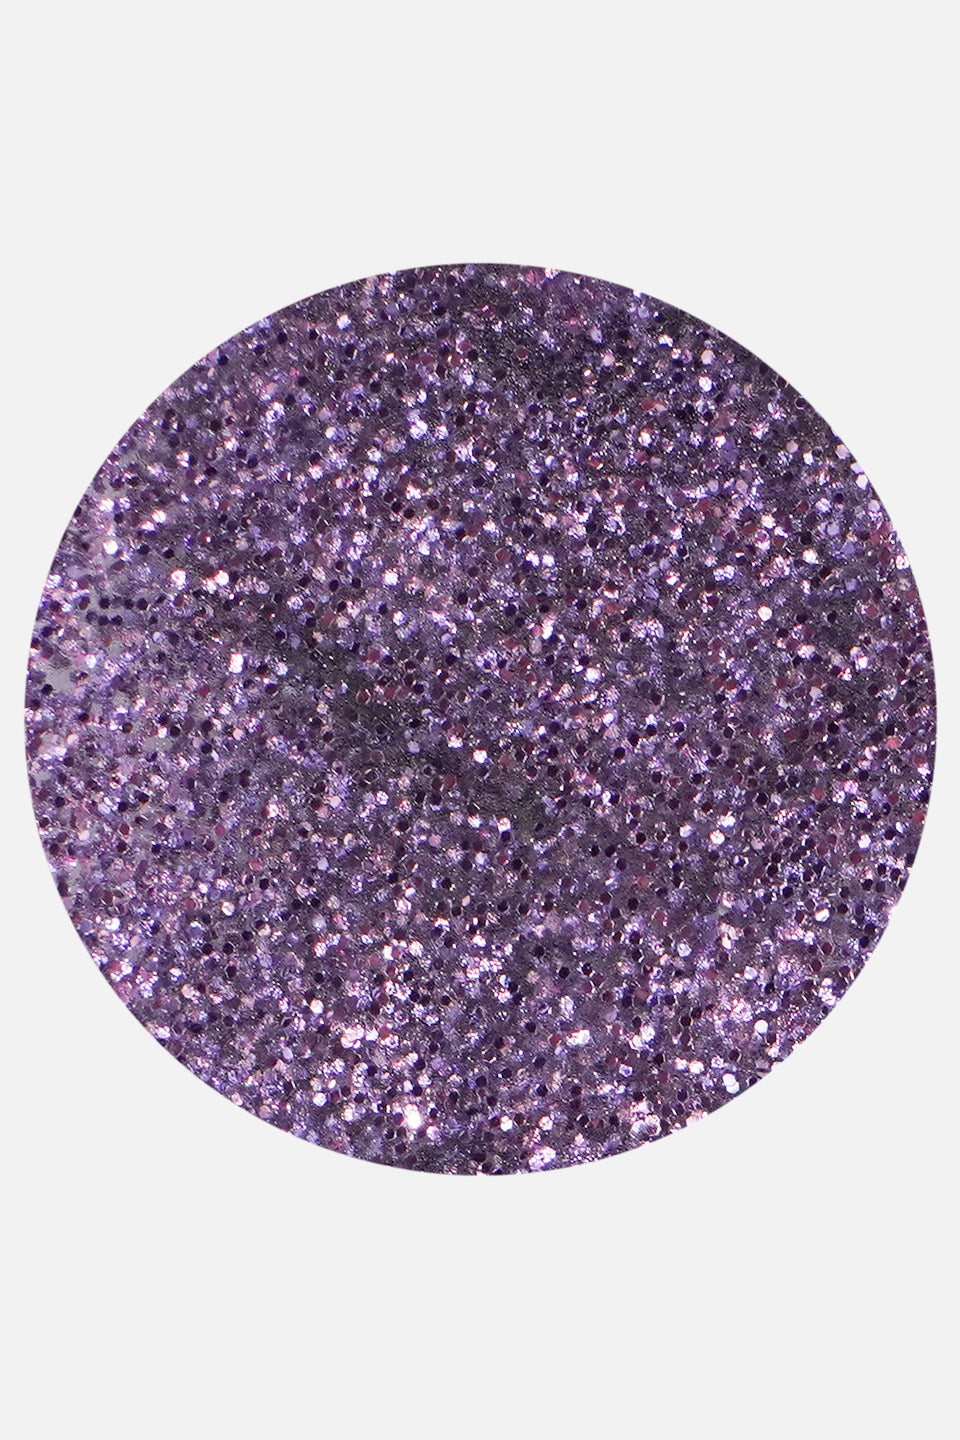 Polvere acrilica viola glitter 5 g